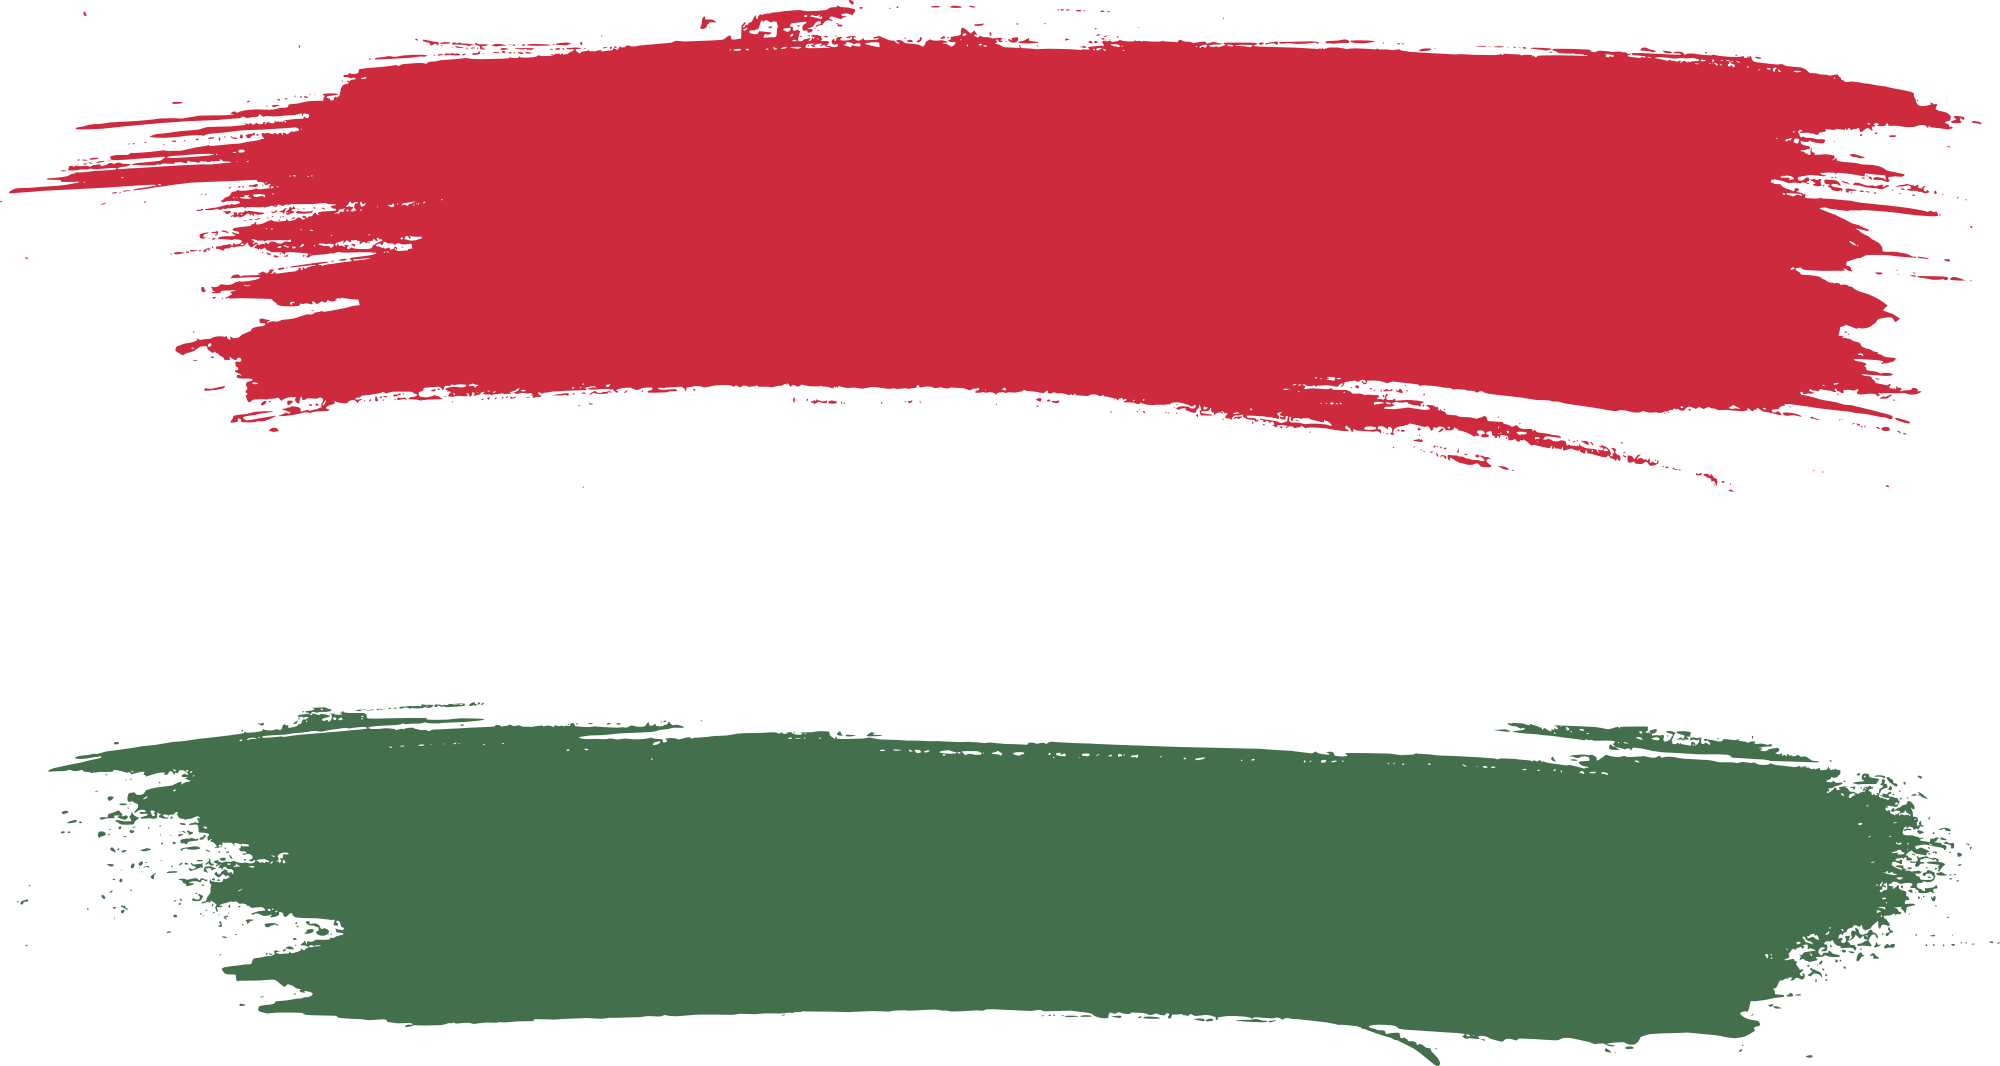 Hungary Flag PNG High Definition Photo Image pngteam.com